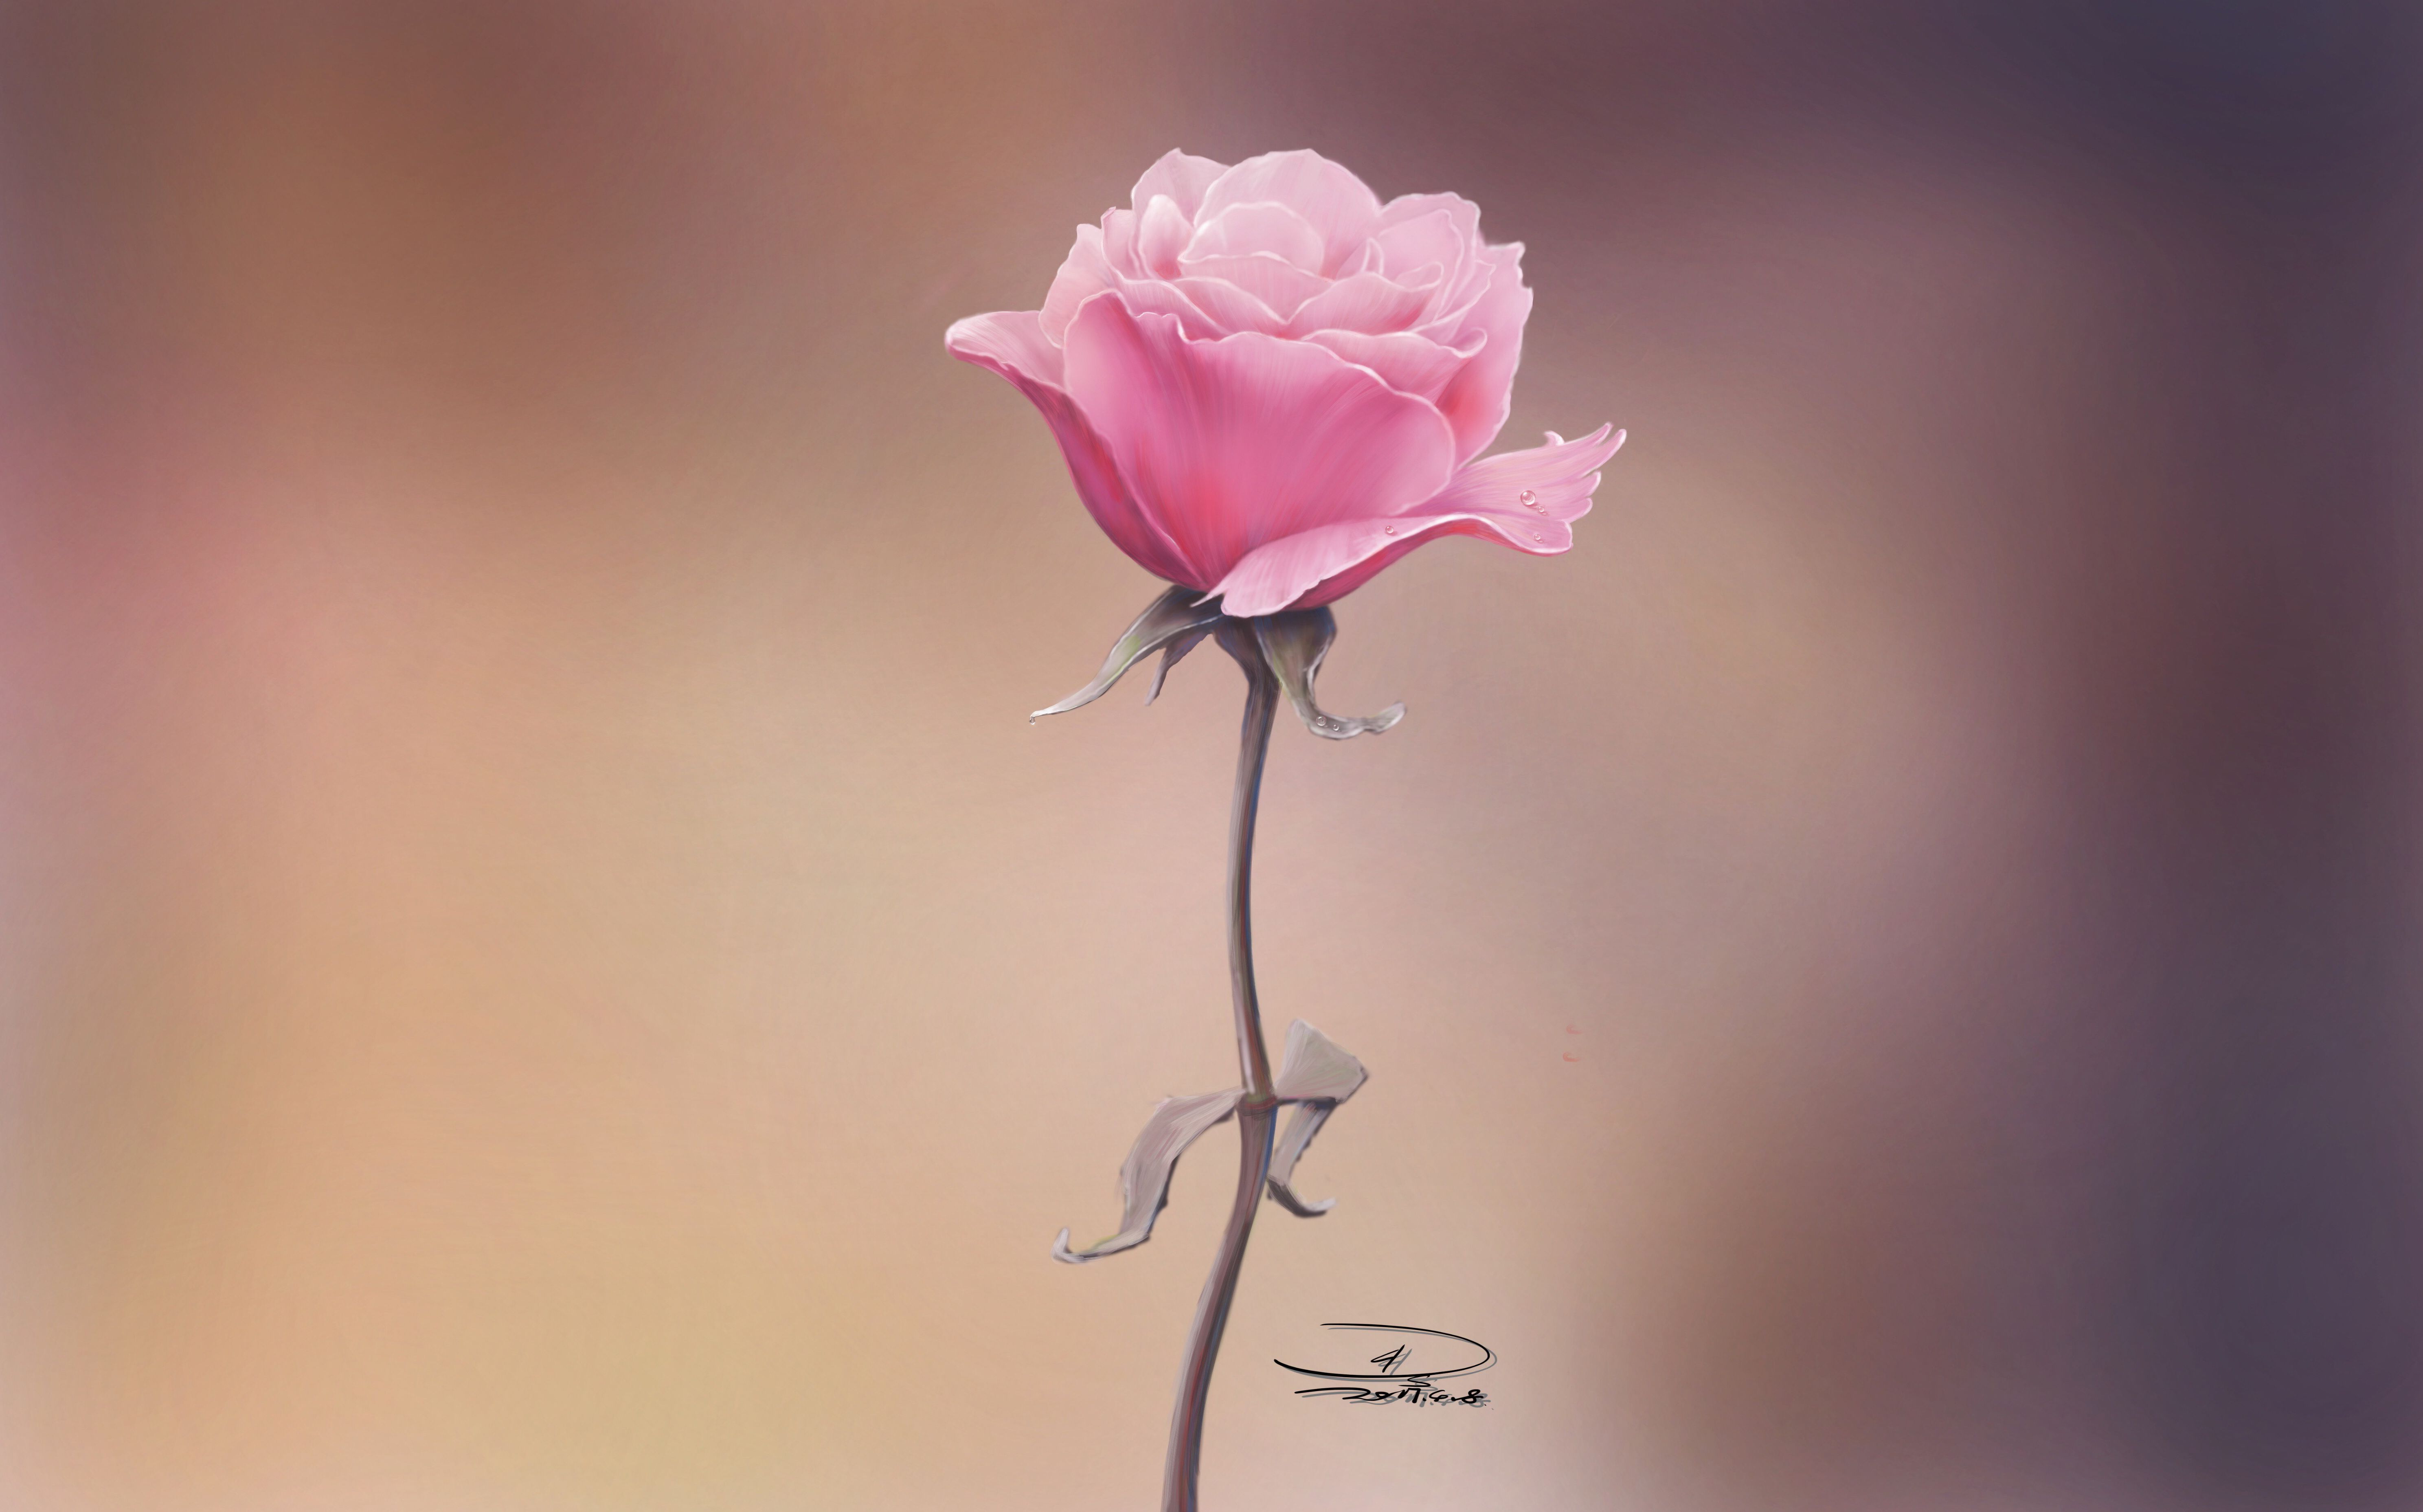 高清晰带水珠的粉红玫瑰花壁纸